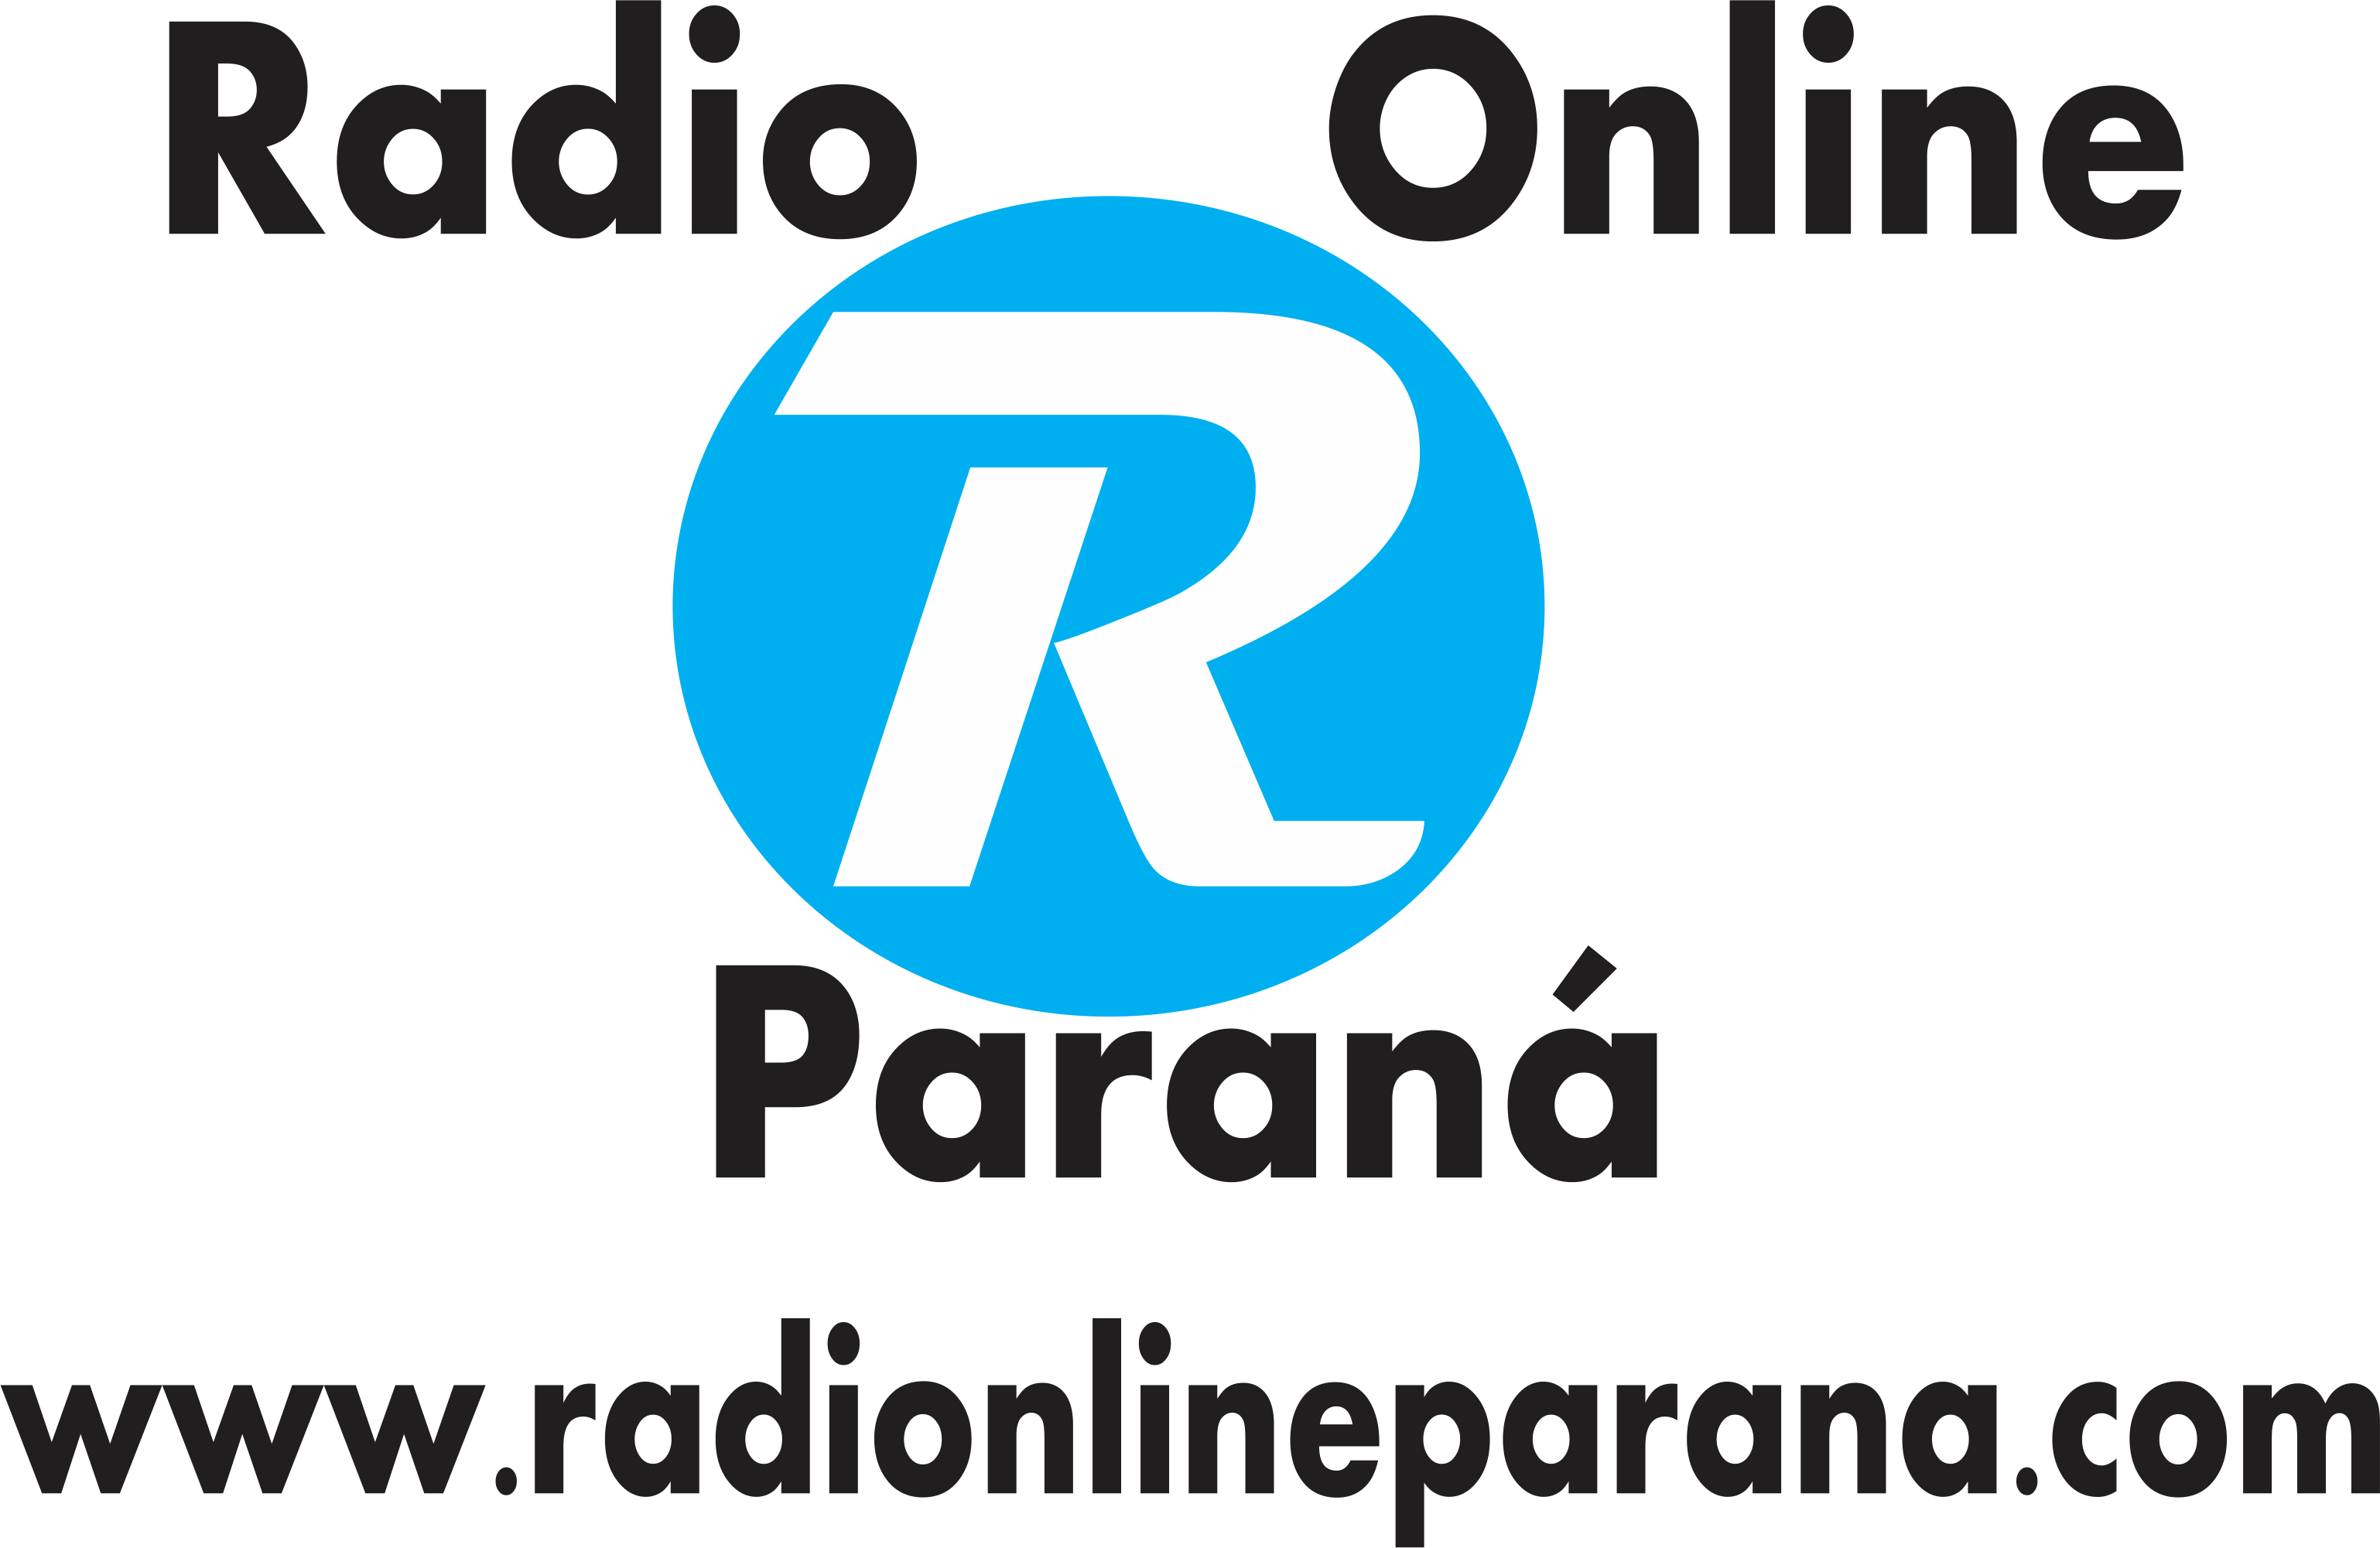 Radio Online Paraná